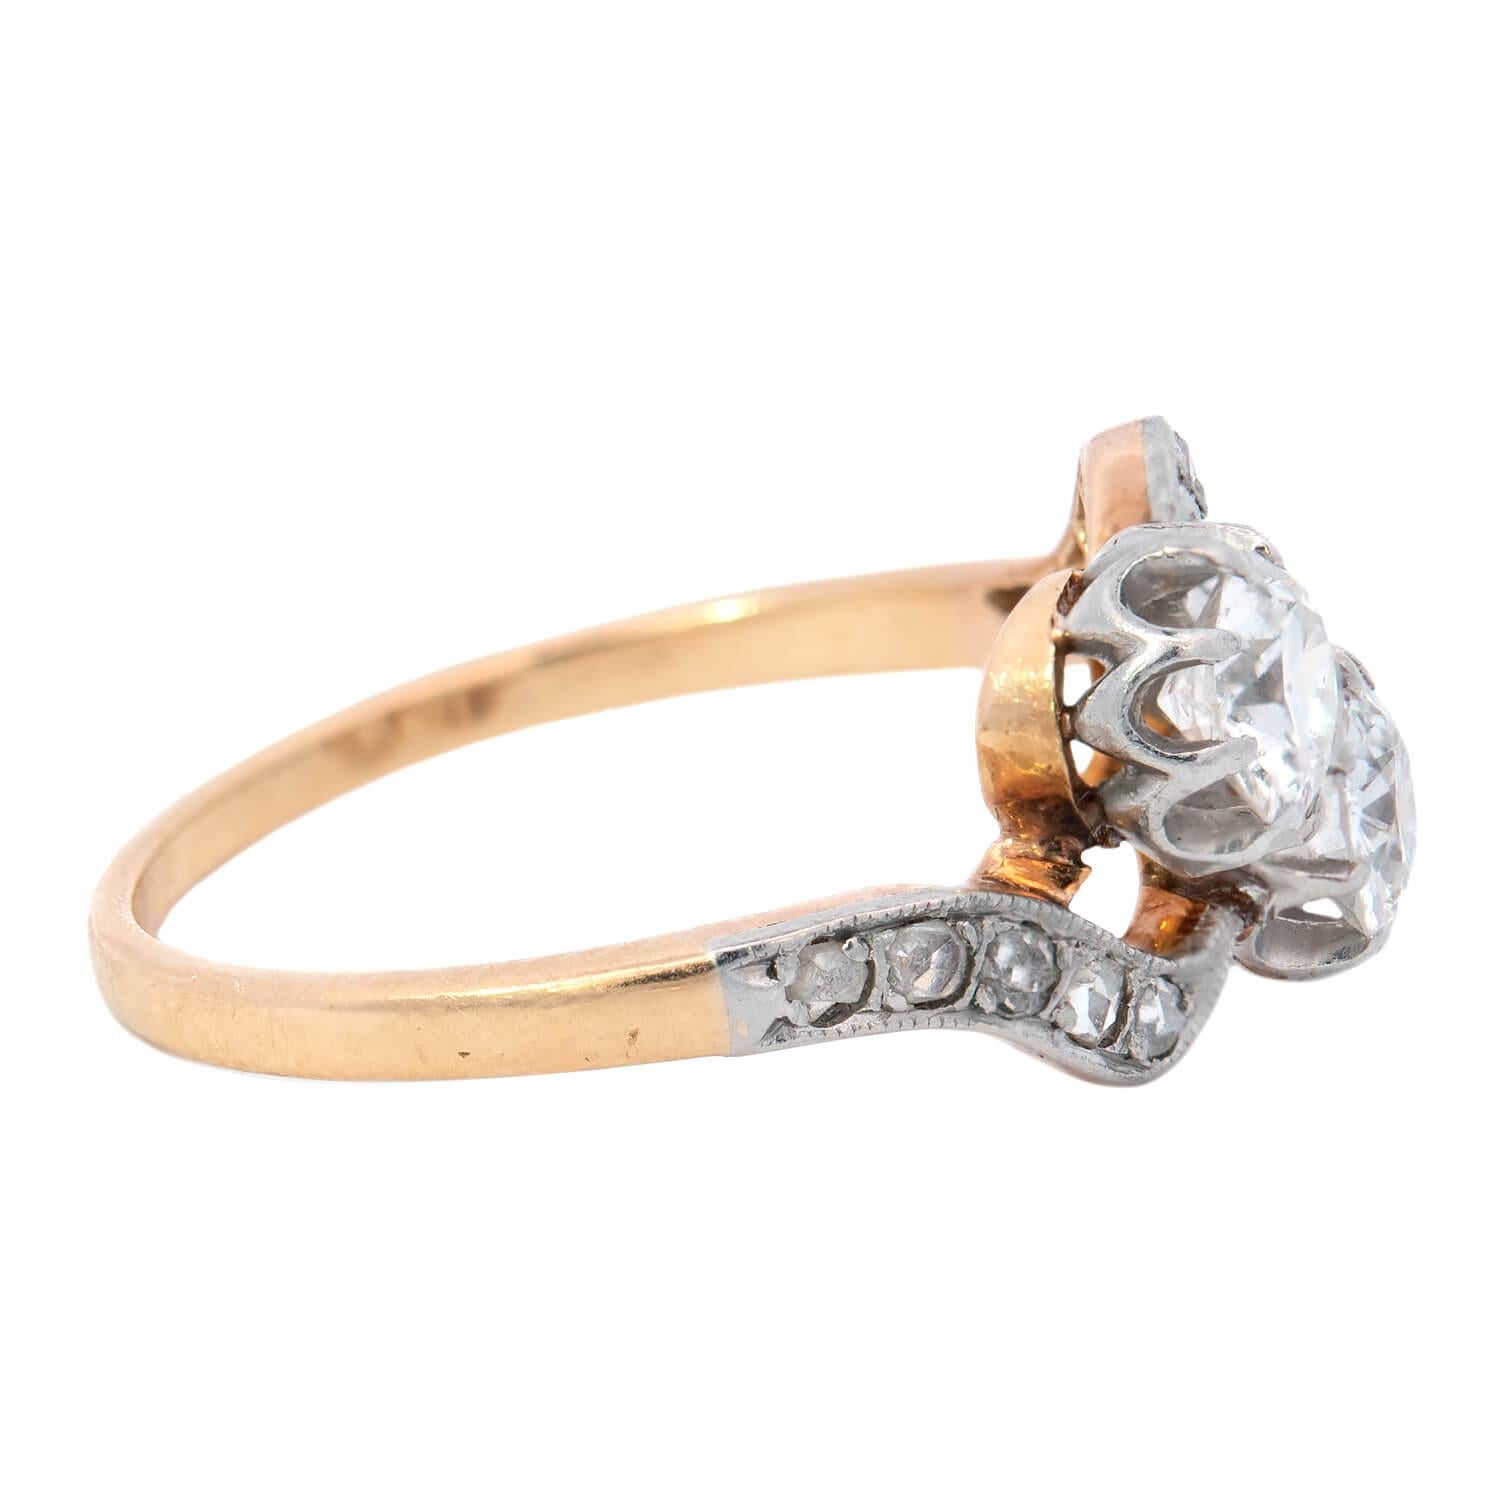 Ein einzigartiger und exquisiter Diamant-Bypass-Ring aus der Edwardianischen Ära (ca. 1910)! Dieses Schmuckstück aus 18-karätigem Gelbgold mit Platinüberzug besteht aus zwei Diamanten mit rundem Schliff, die in der Mitte aneinander geschmiegt sind